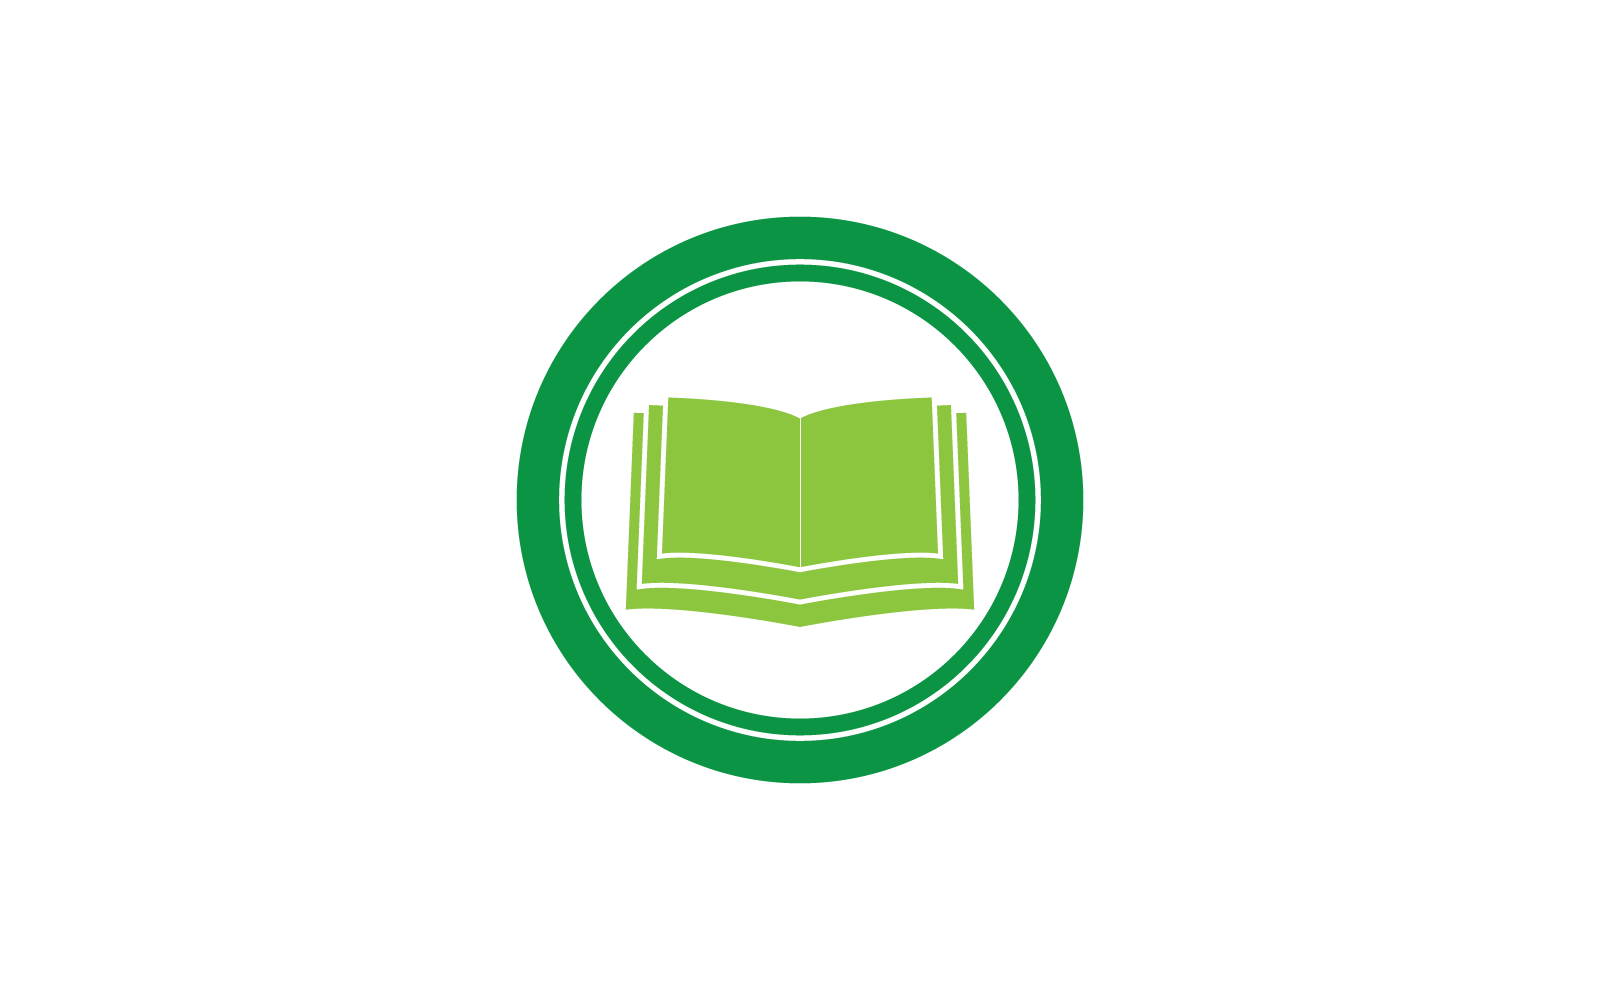 Book education logo design vector template